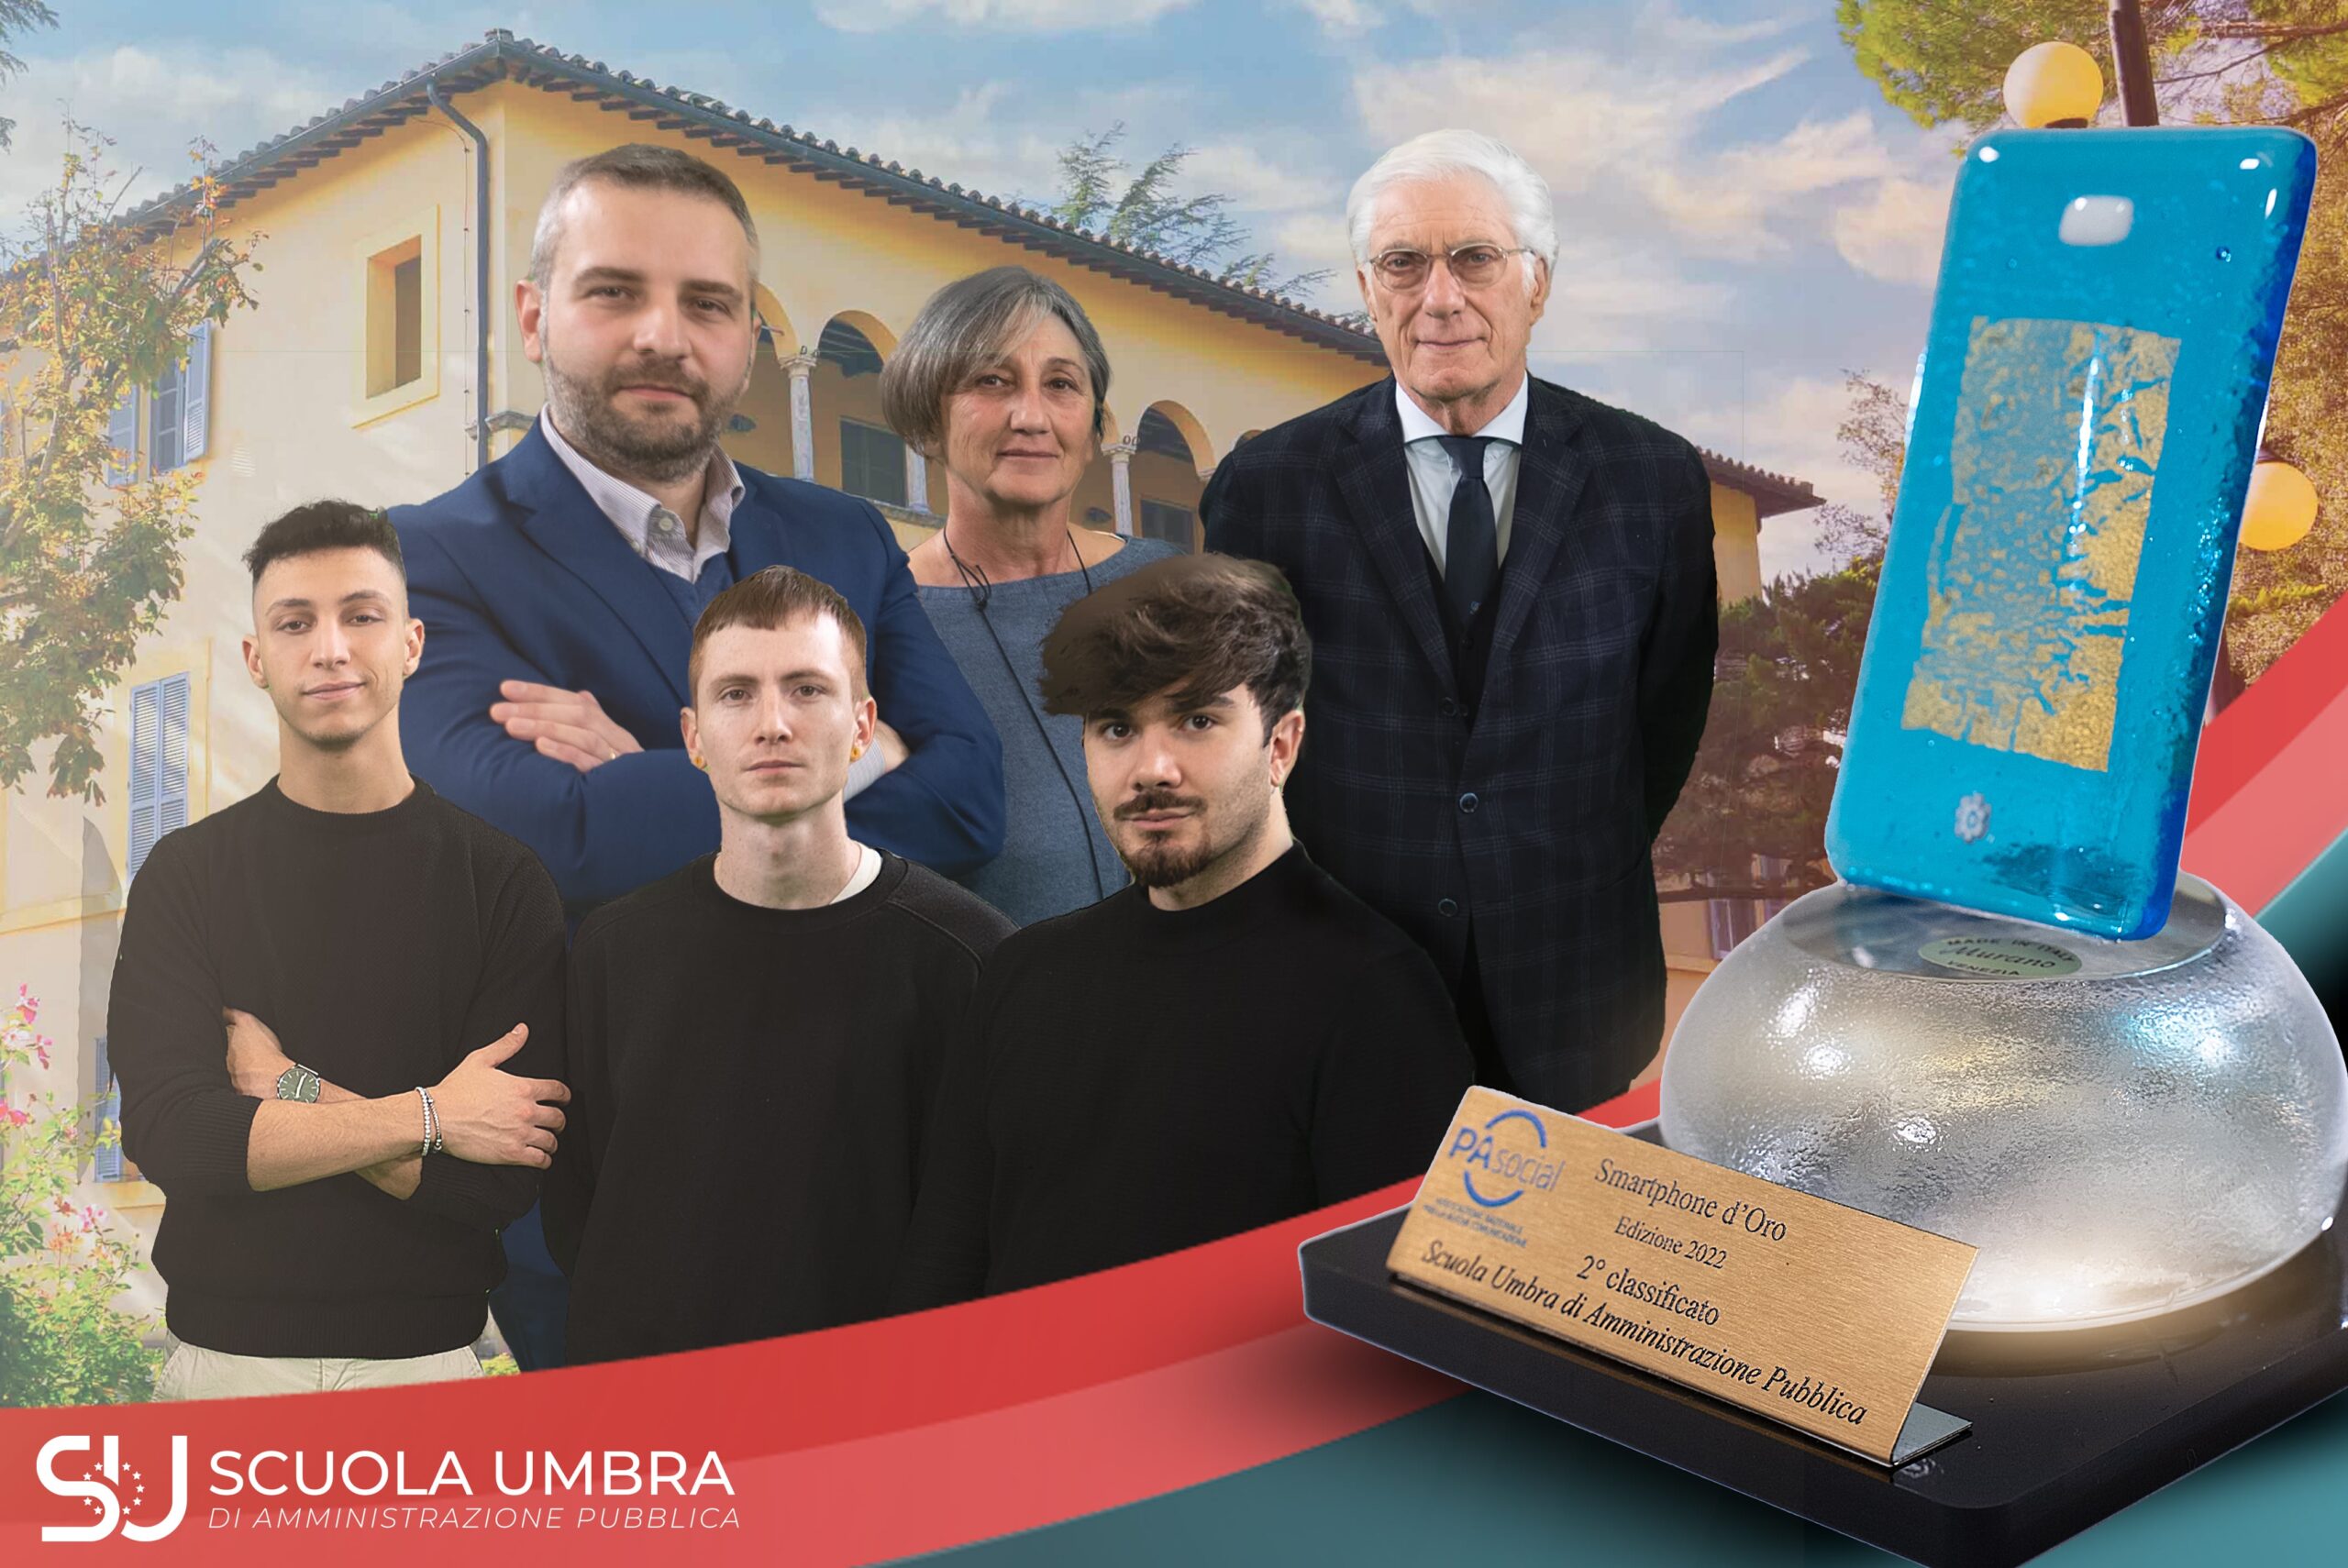 Scuola UmbraTV, la  web tv della Scuola Umbra di Amministrazione Pubblica, premiata con lo “Smartphone d’oro” come secondo miglior progetto di comunicazione digitale italiana prodotto da una PA